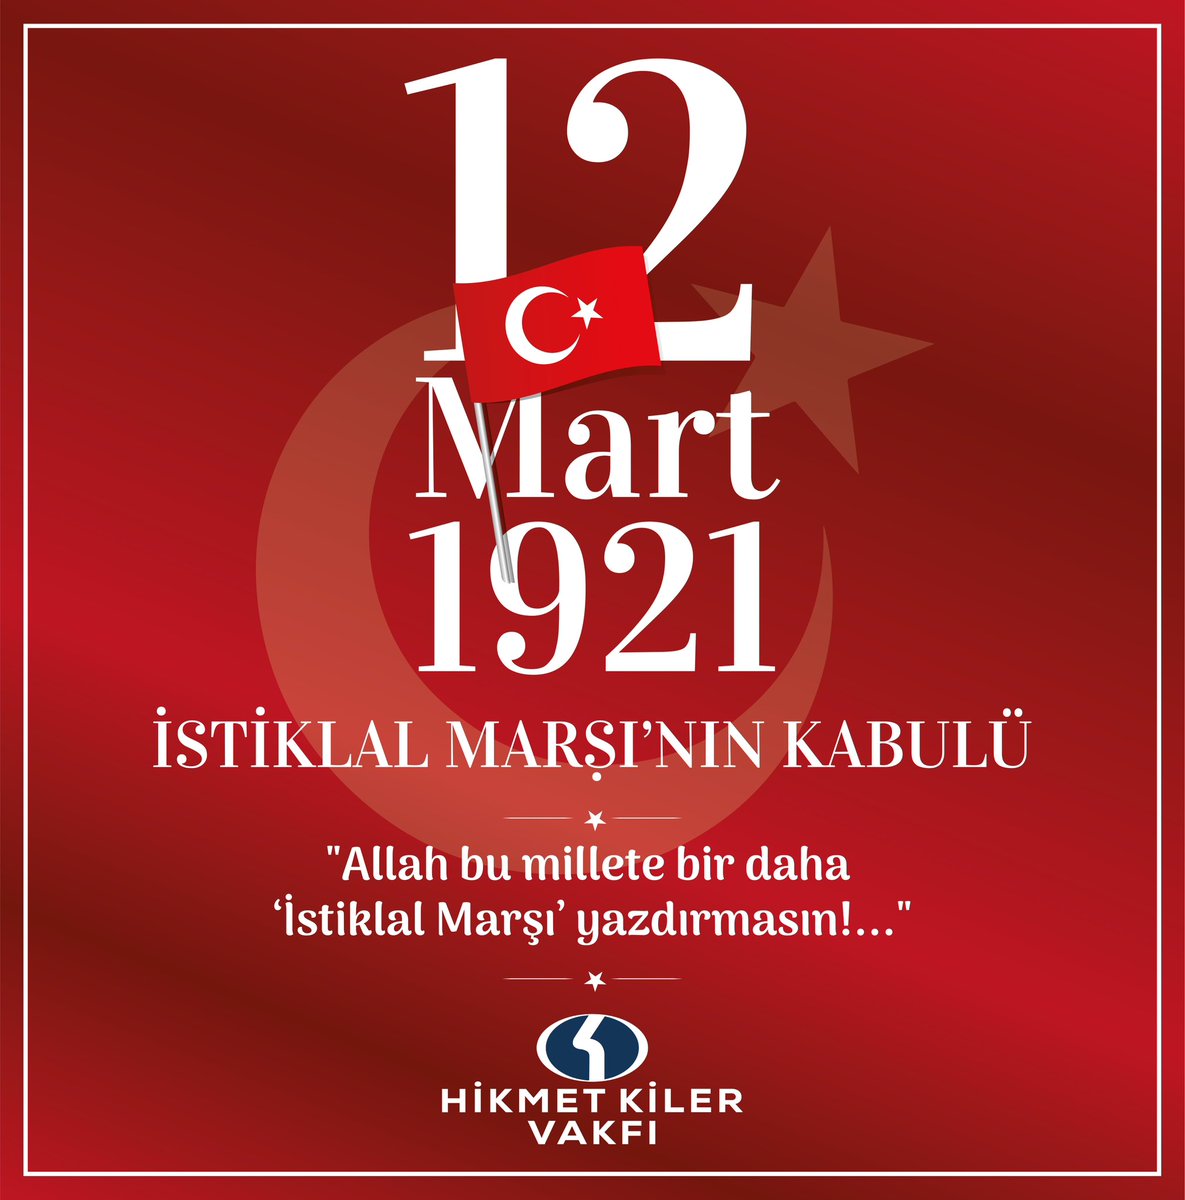 İstiklal Marşı’nın Kabulünün 103. Yılı Kutlu Olsun!
#hikmetkilervakfı